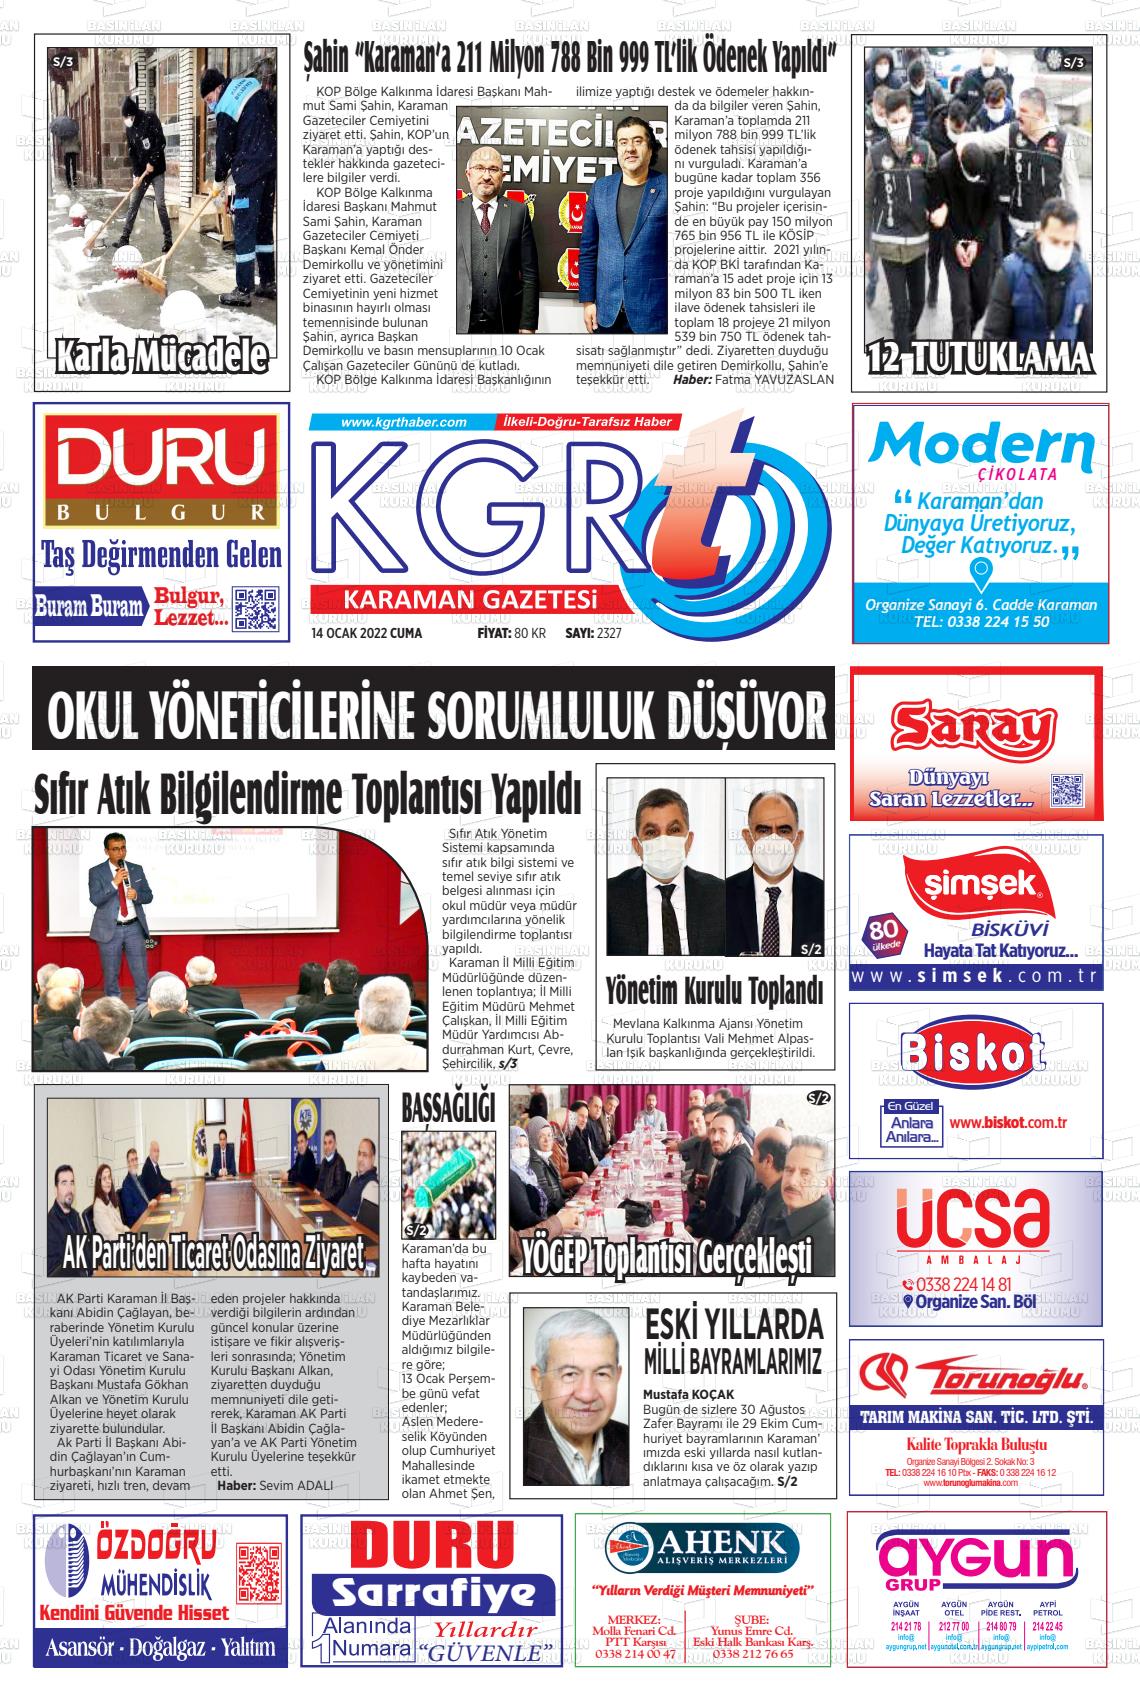 14 Ocak 2022 Kgrt Karaman Gazete Manşeti